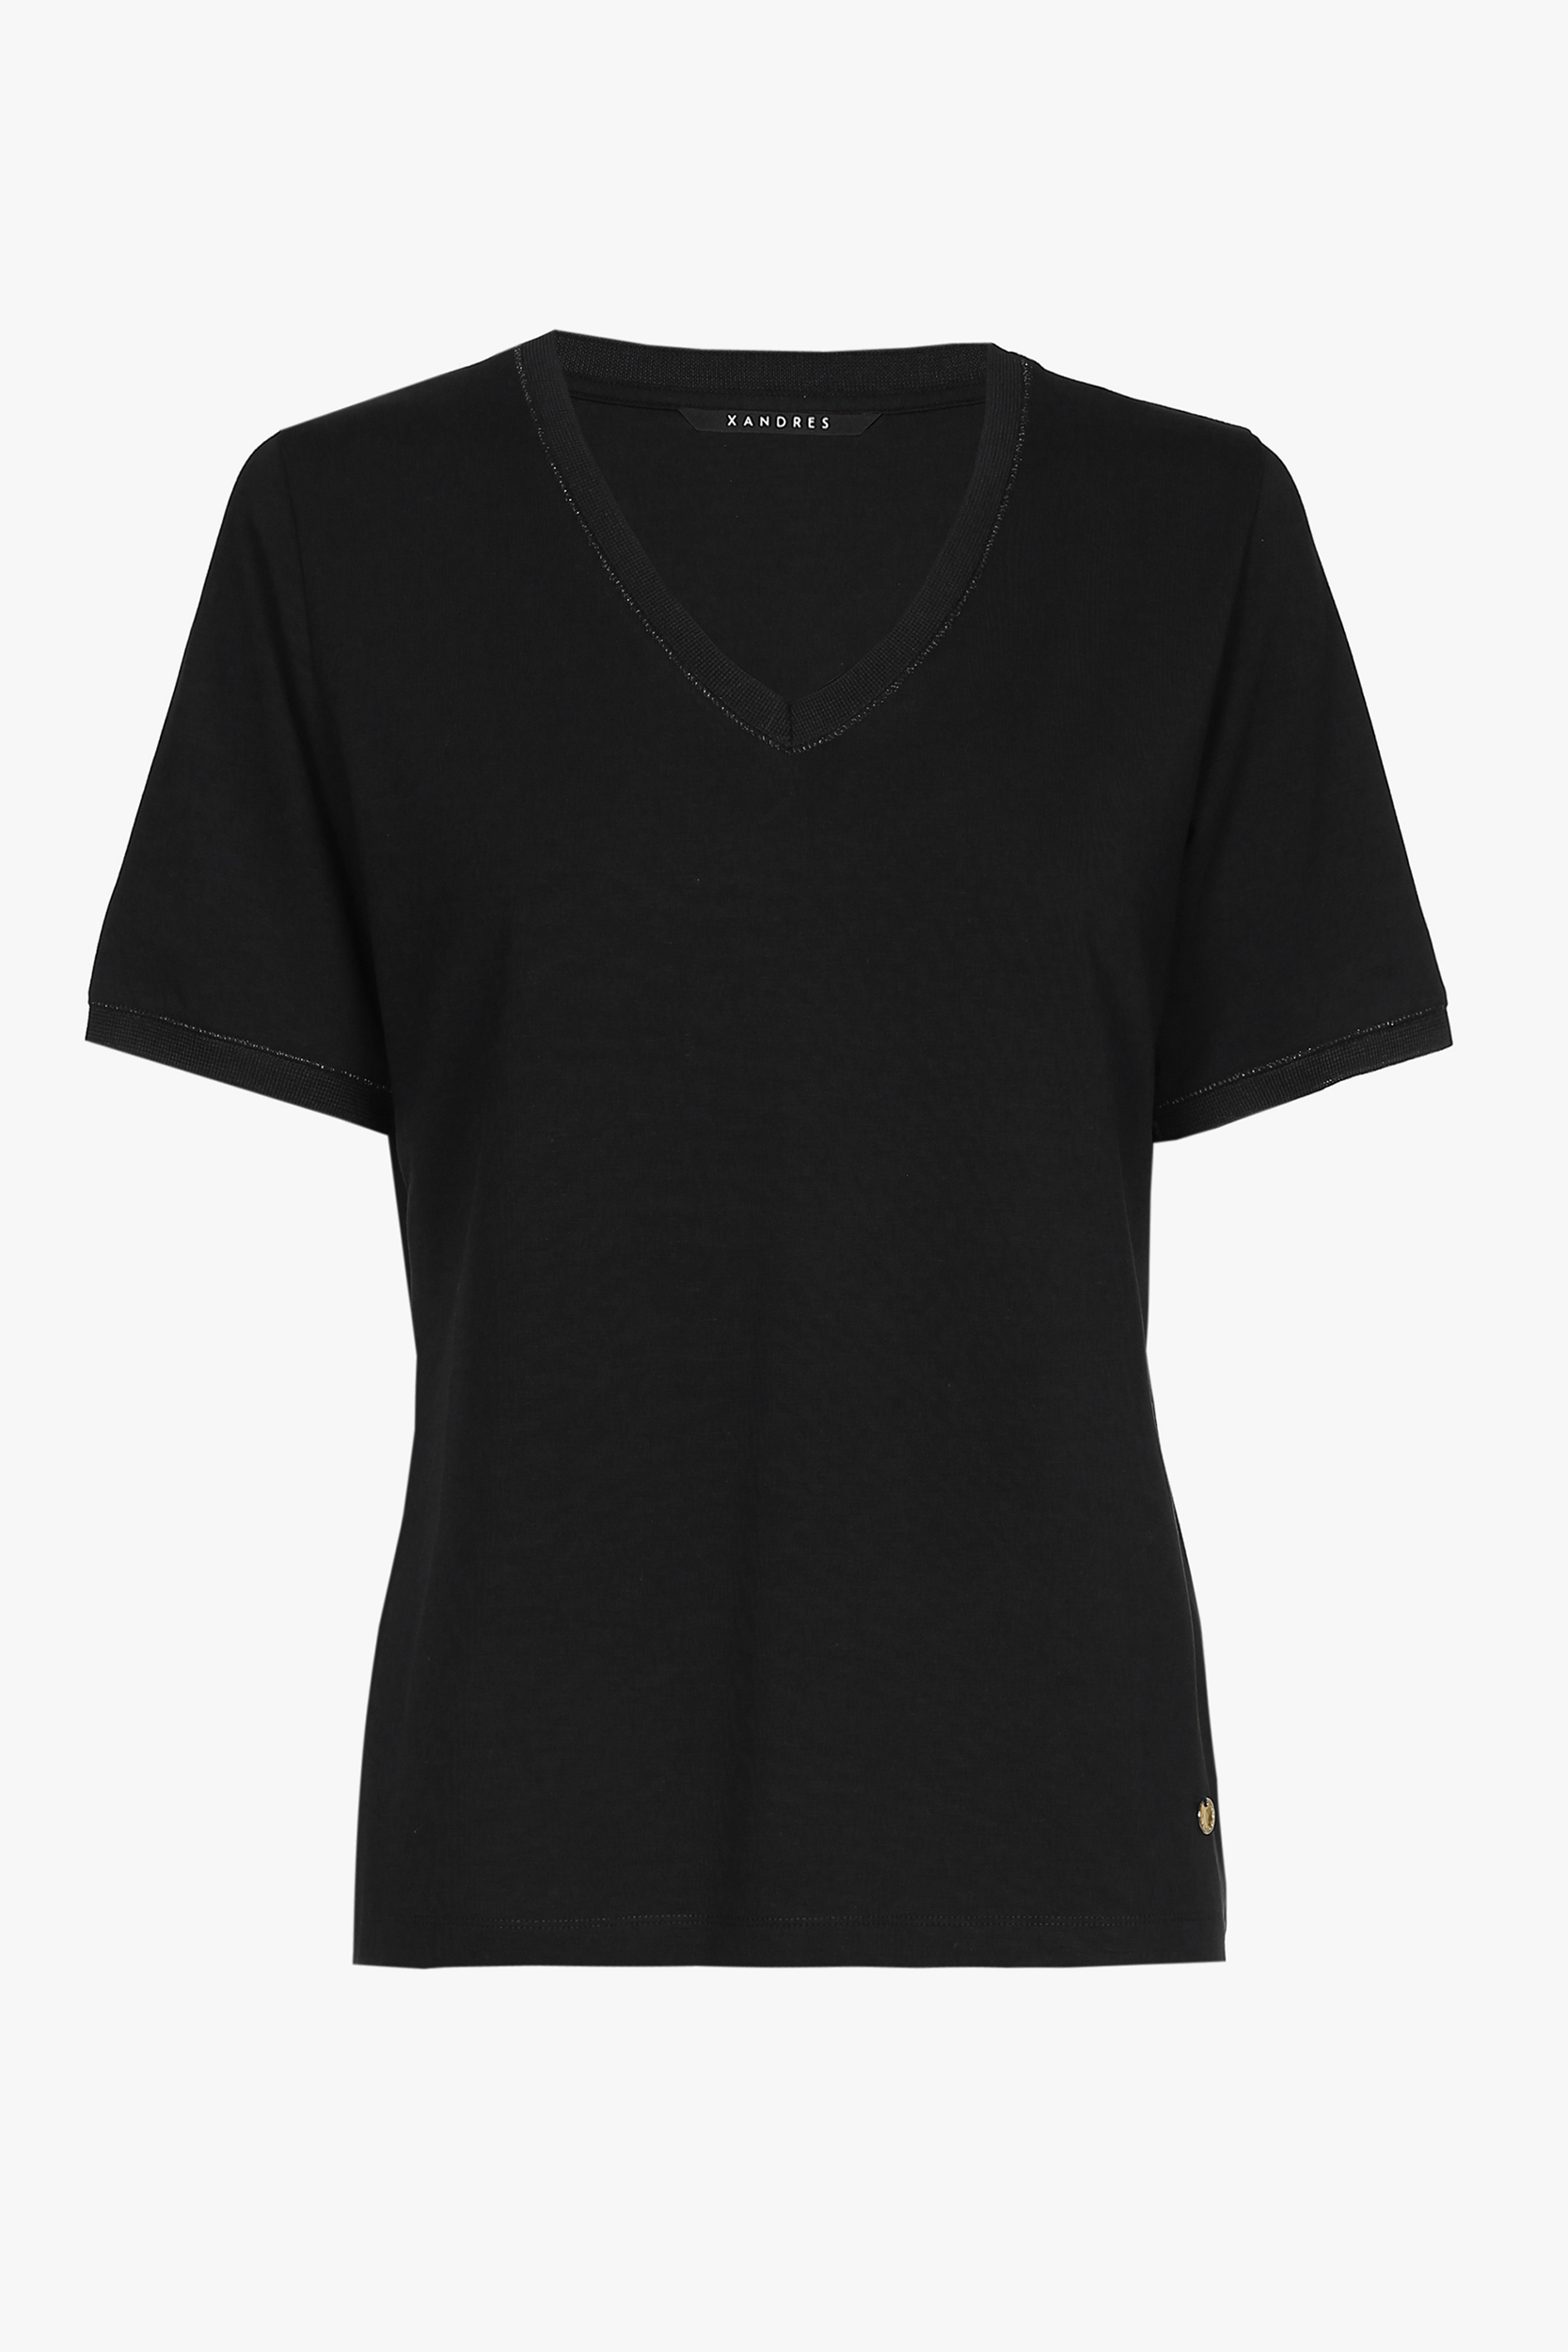 T-shirt noir à manches courtes et col en V.